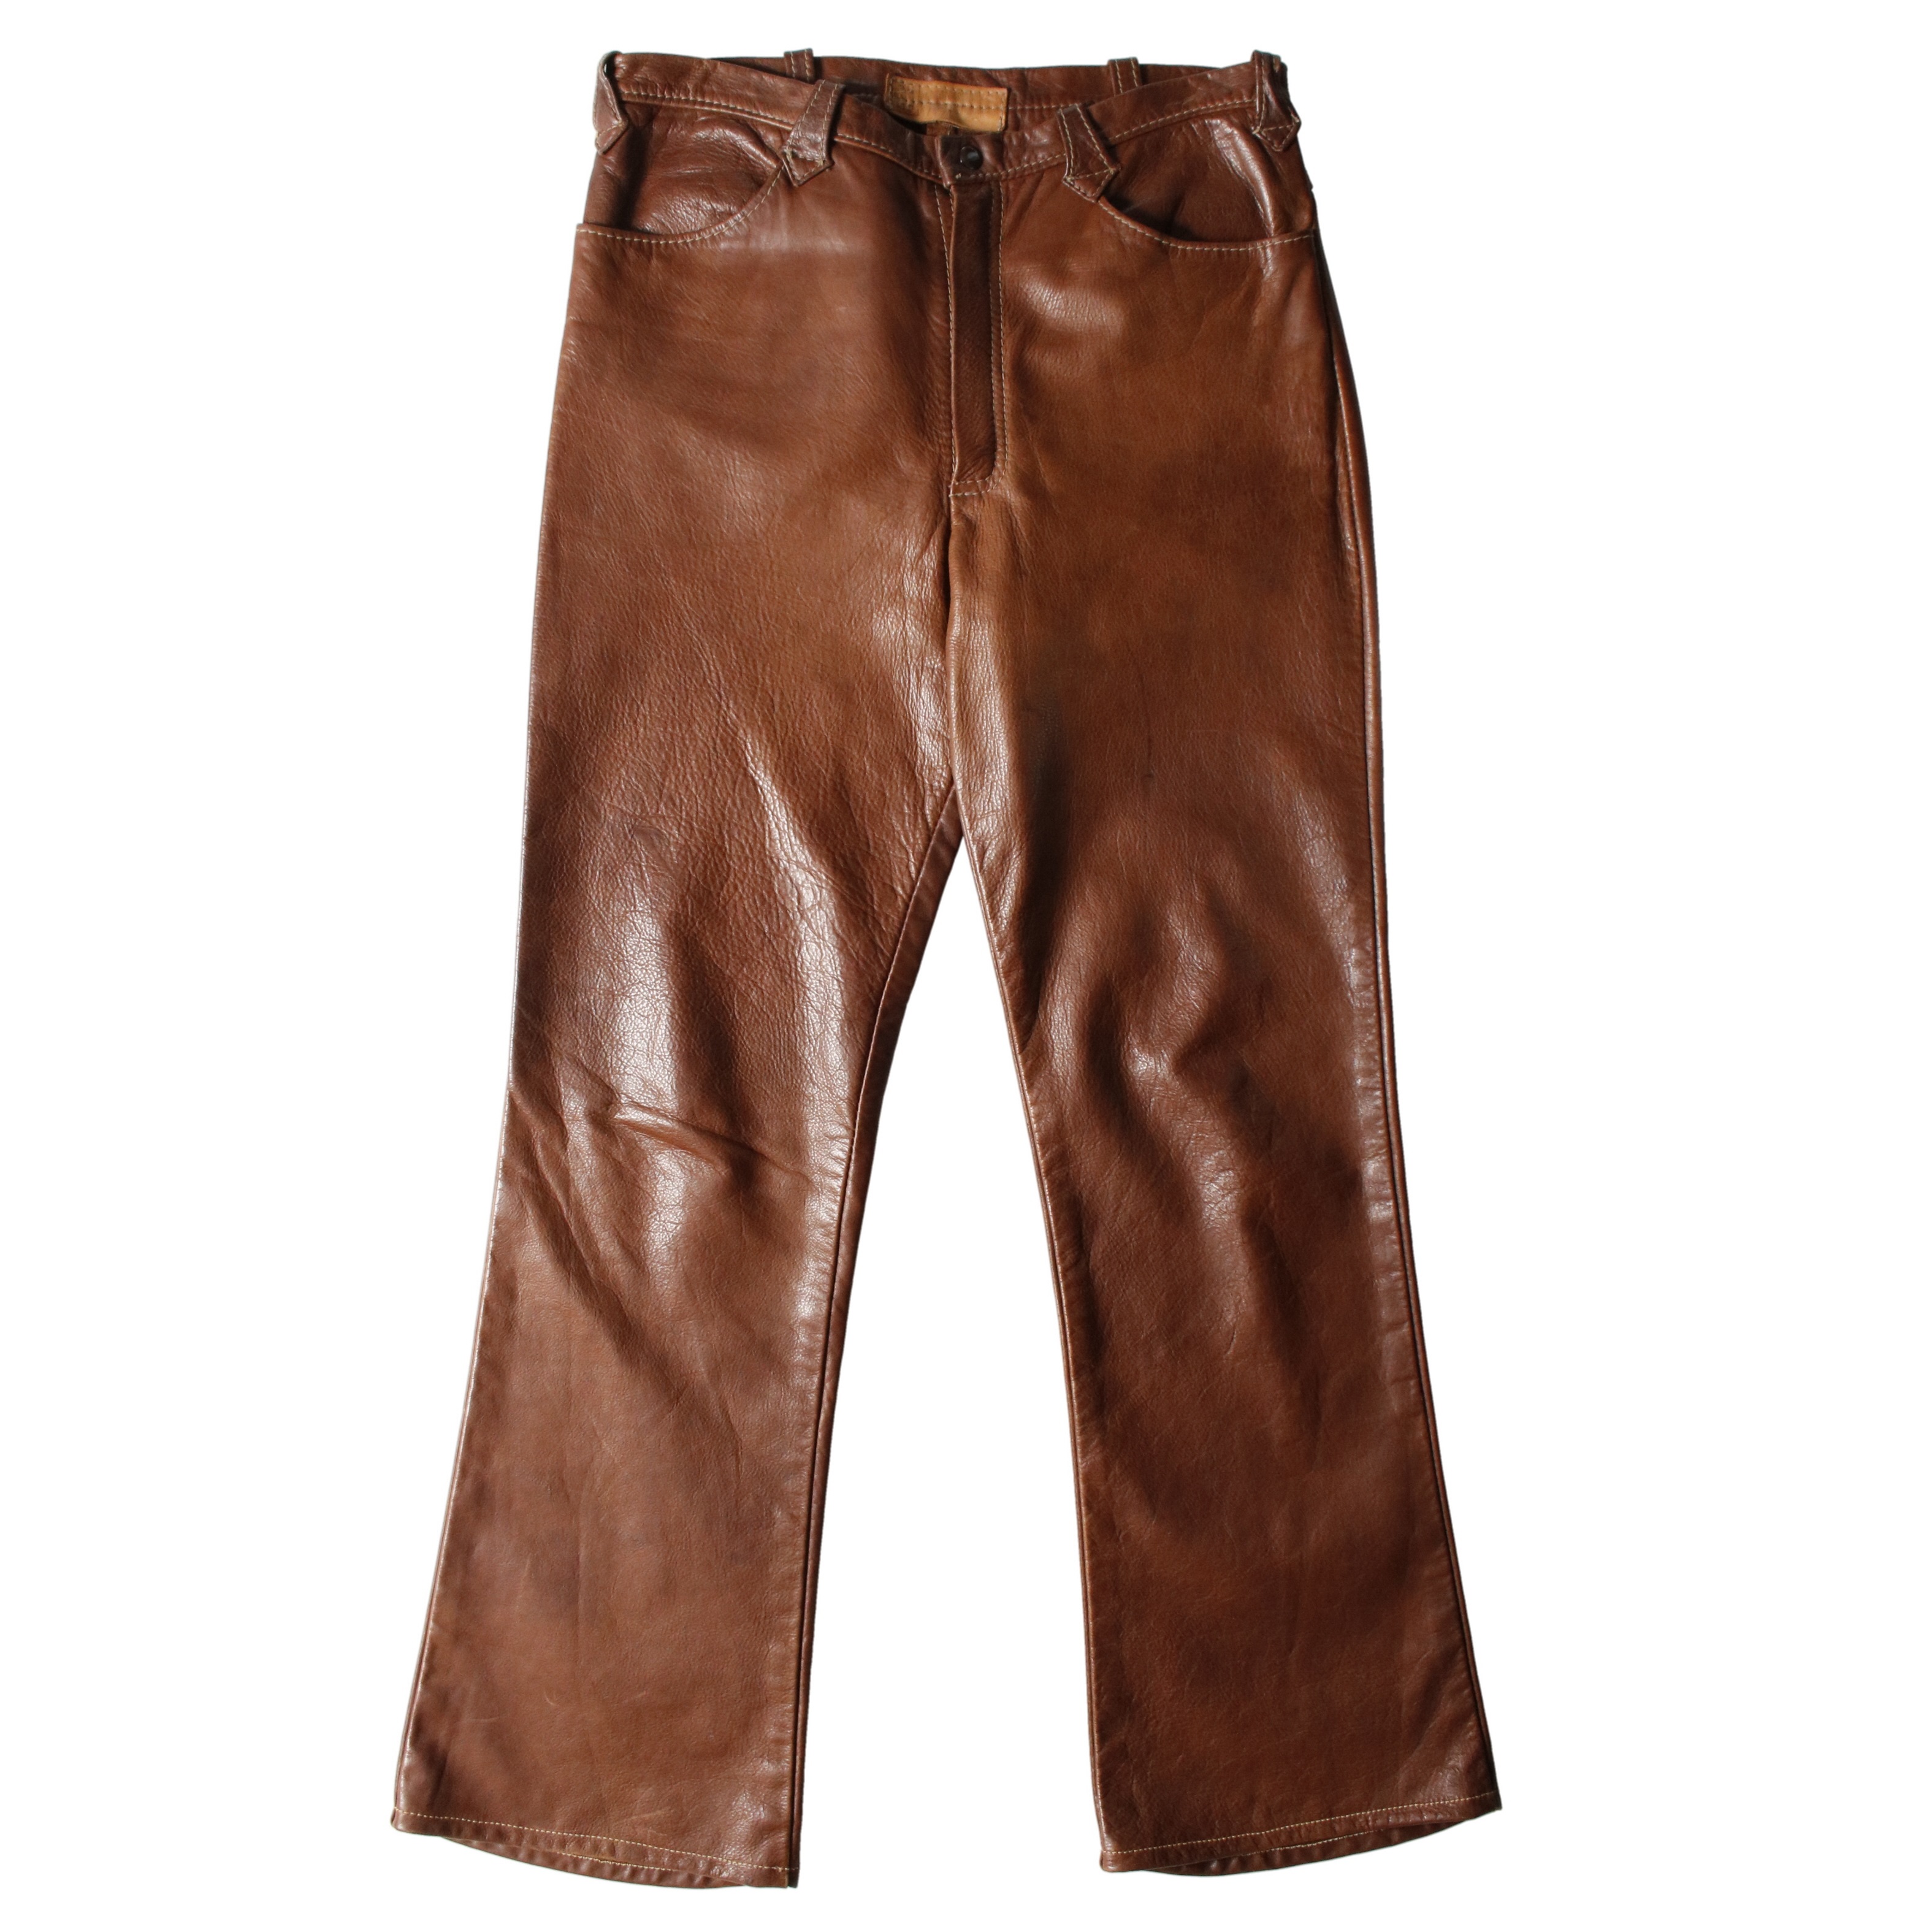 Vintage leather pants レザー パンツ フレア ブーツカット